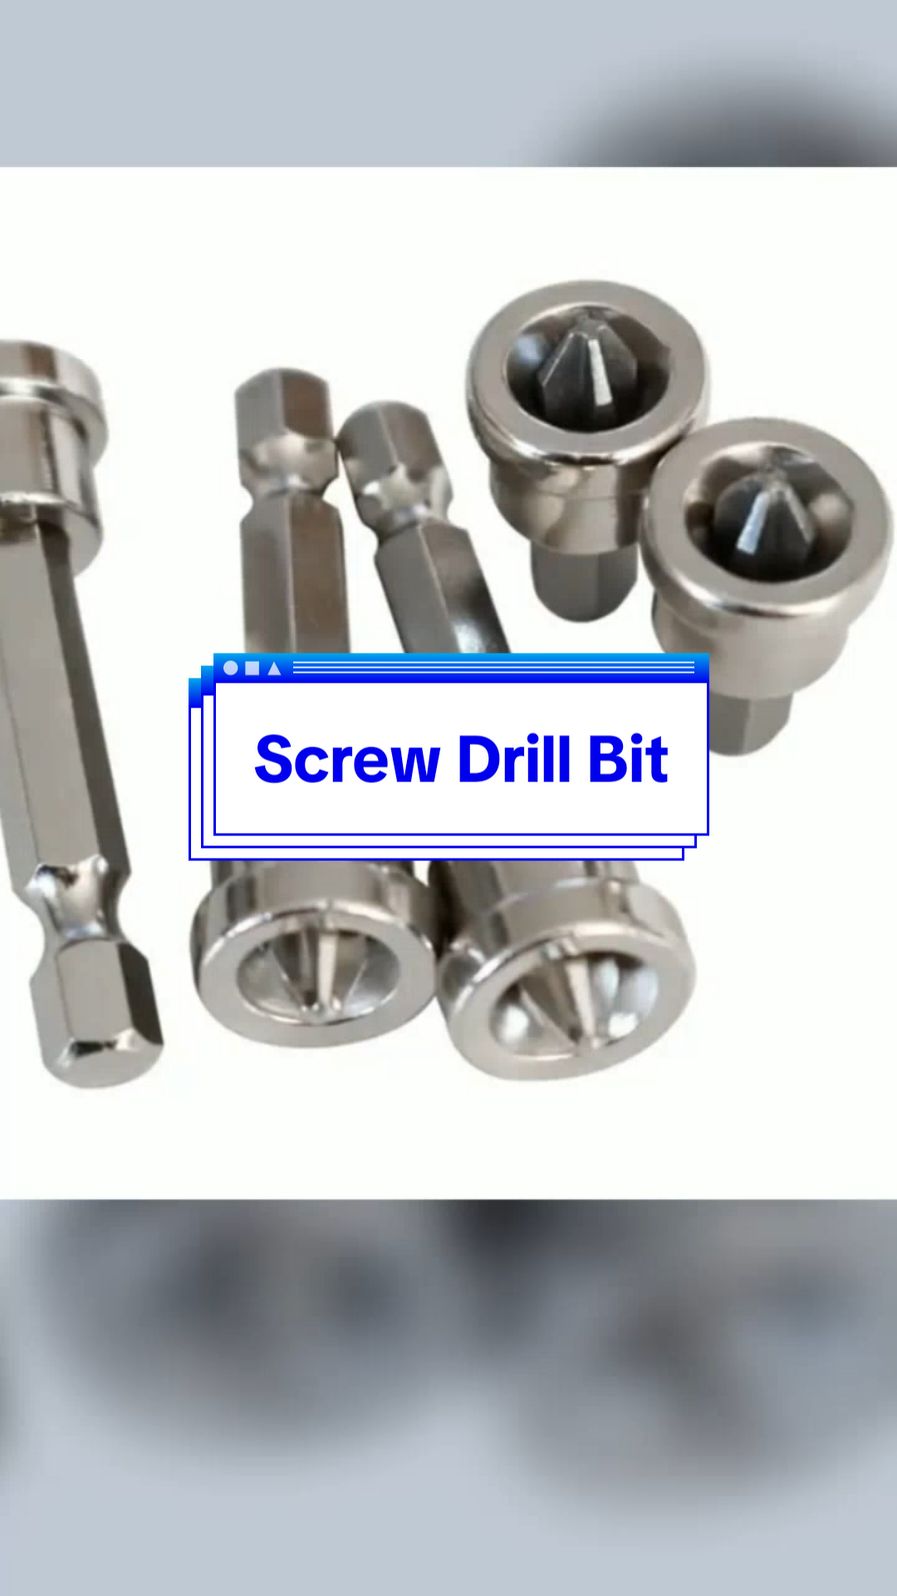 #screwdrillbit #drillbit #drillbitlifespan #drillbitmining 